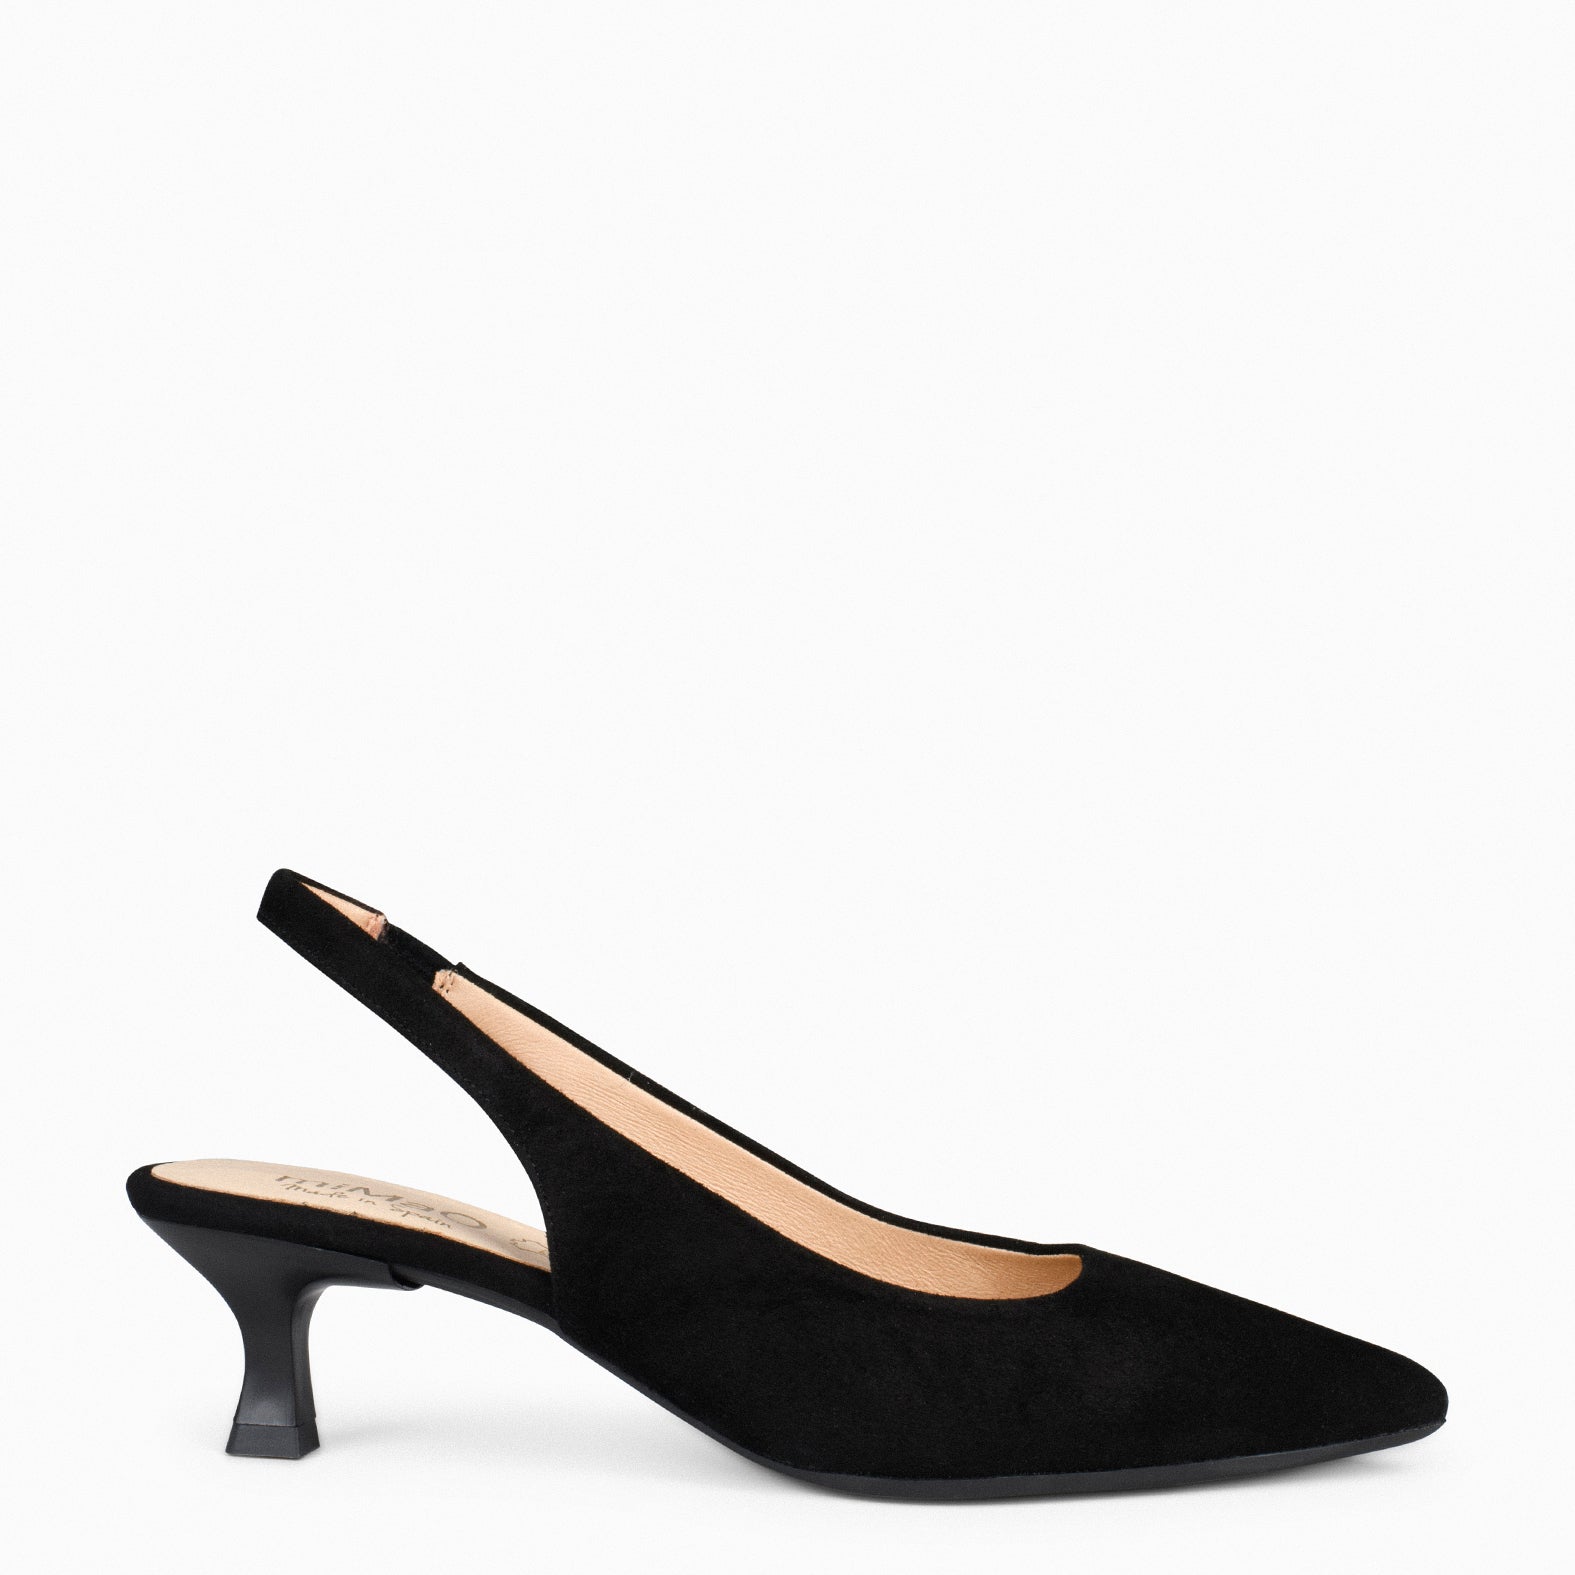 KITTEN – BLACK low heel slingback